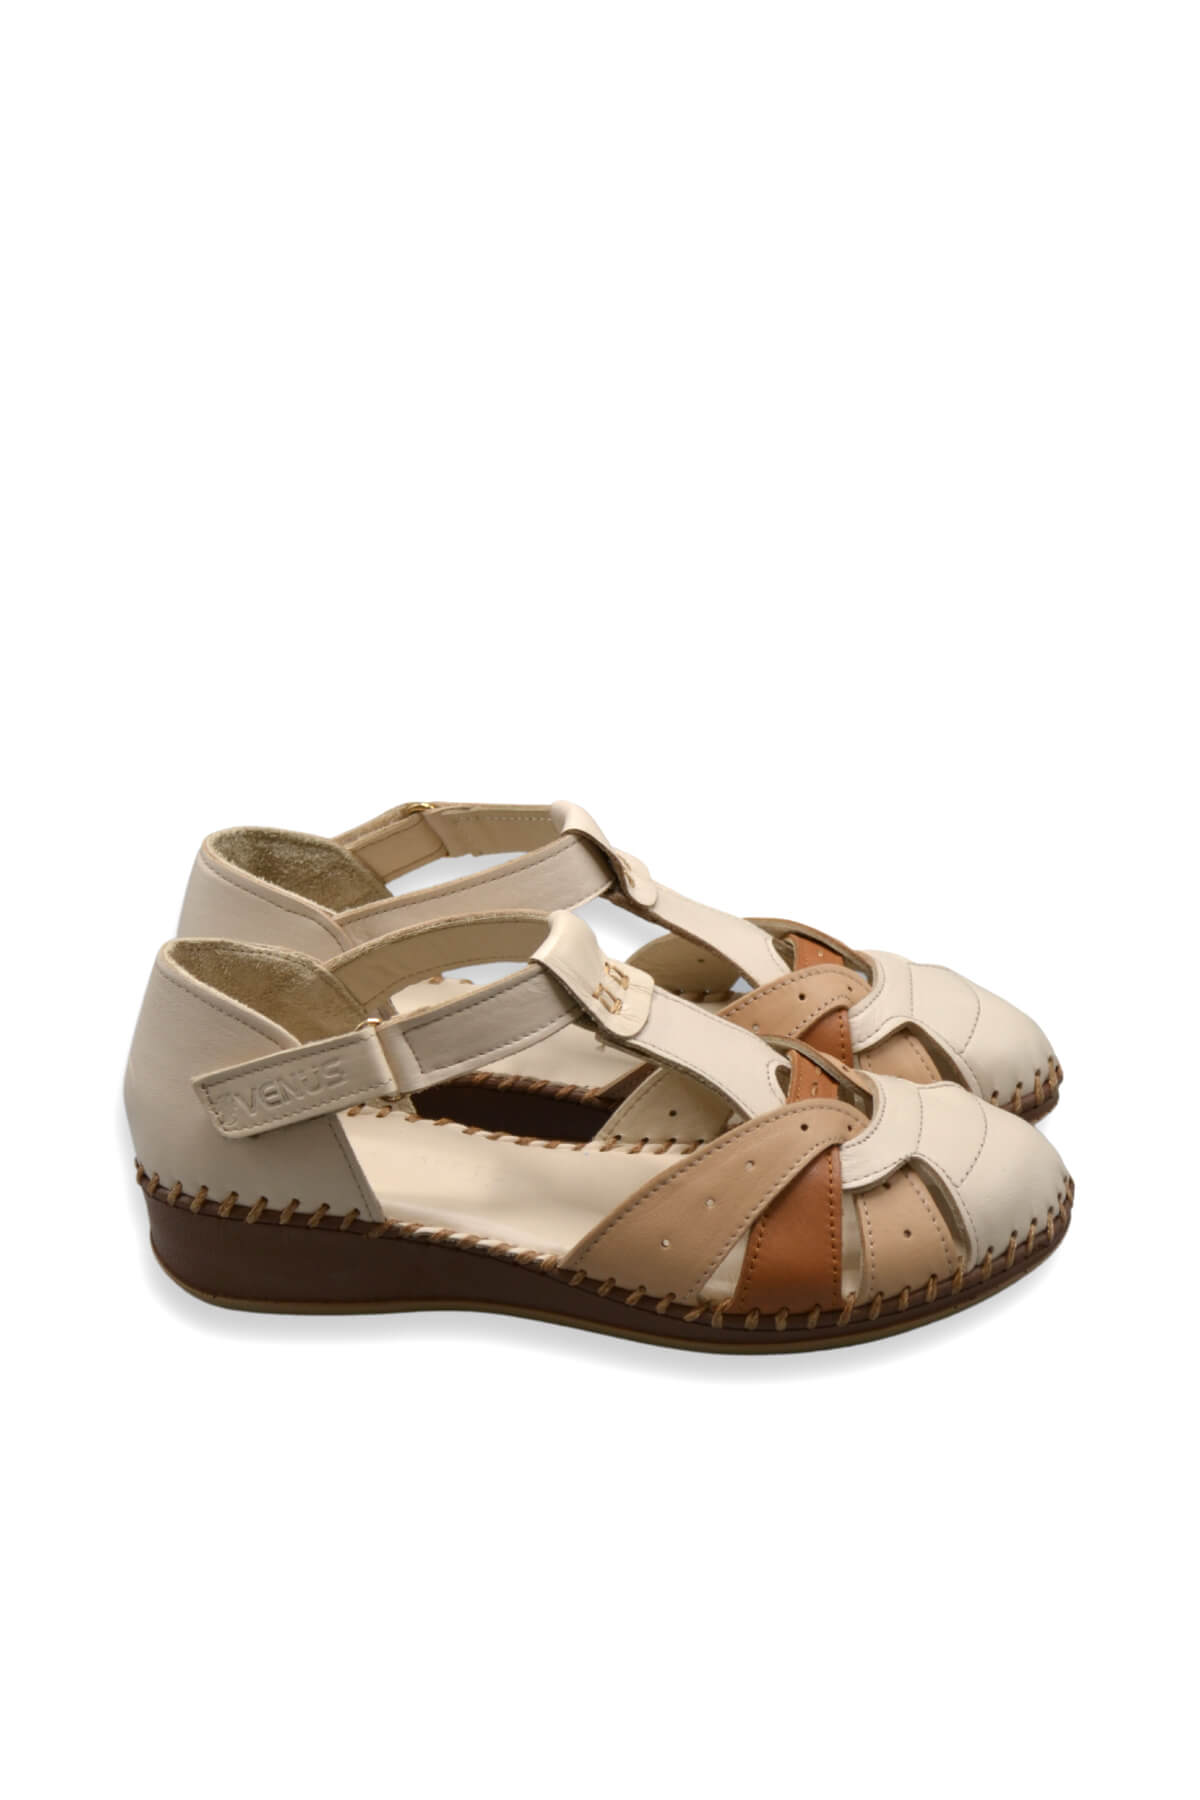 Kadın Comfort Deri Sandalet Bej 2313703Y - Thumbnail